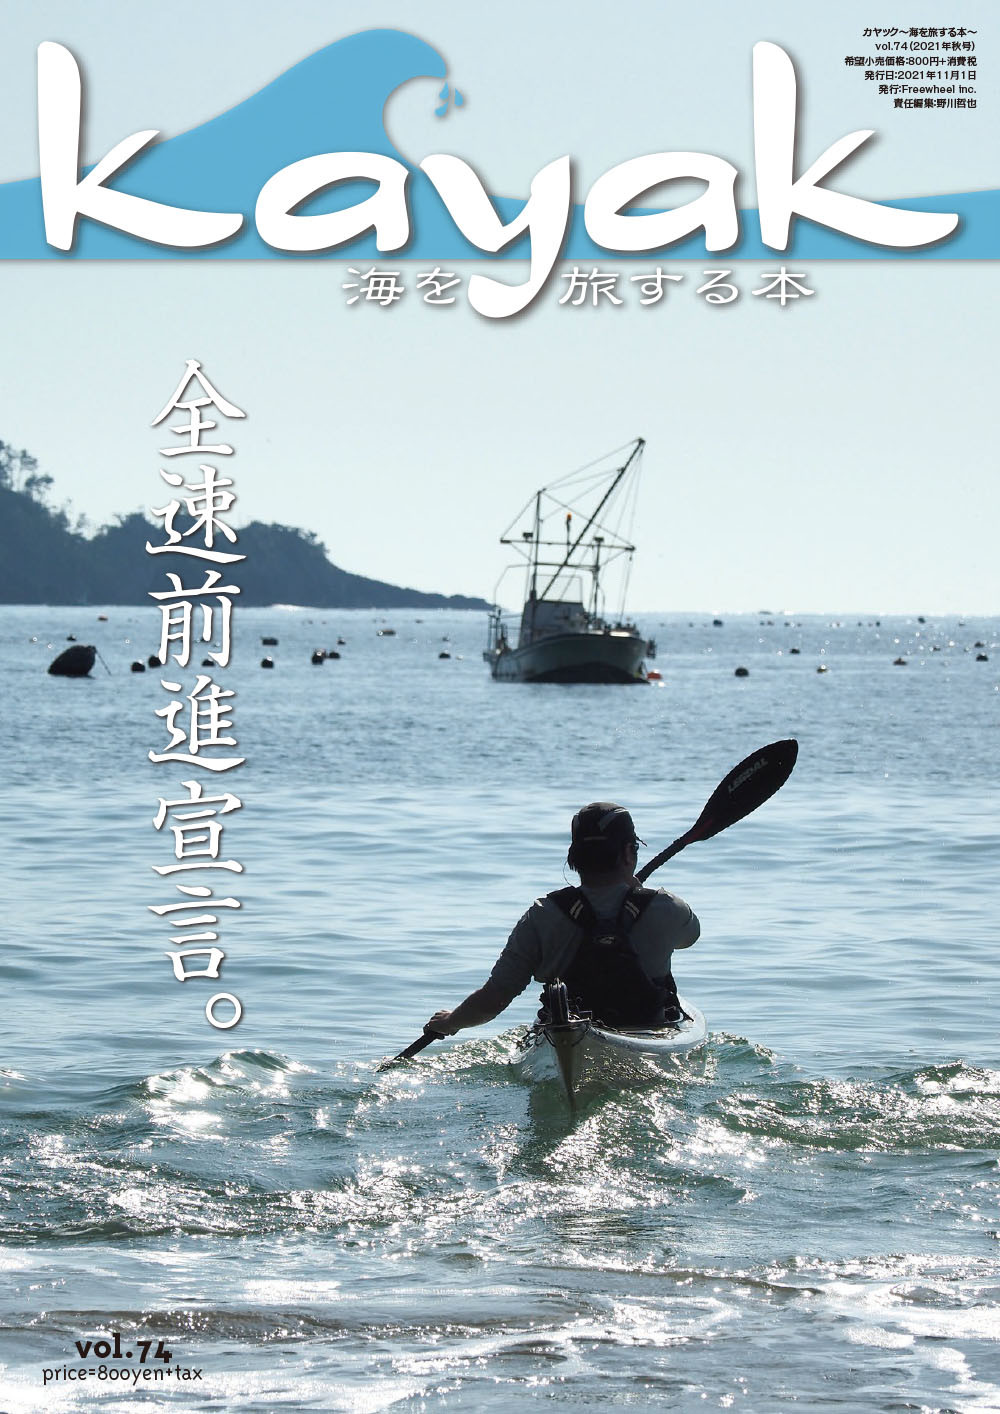 kayak〜海を旅する本 vol.74　発売のお知らせ